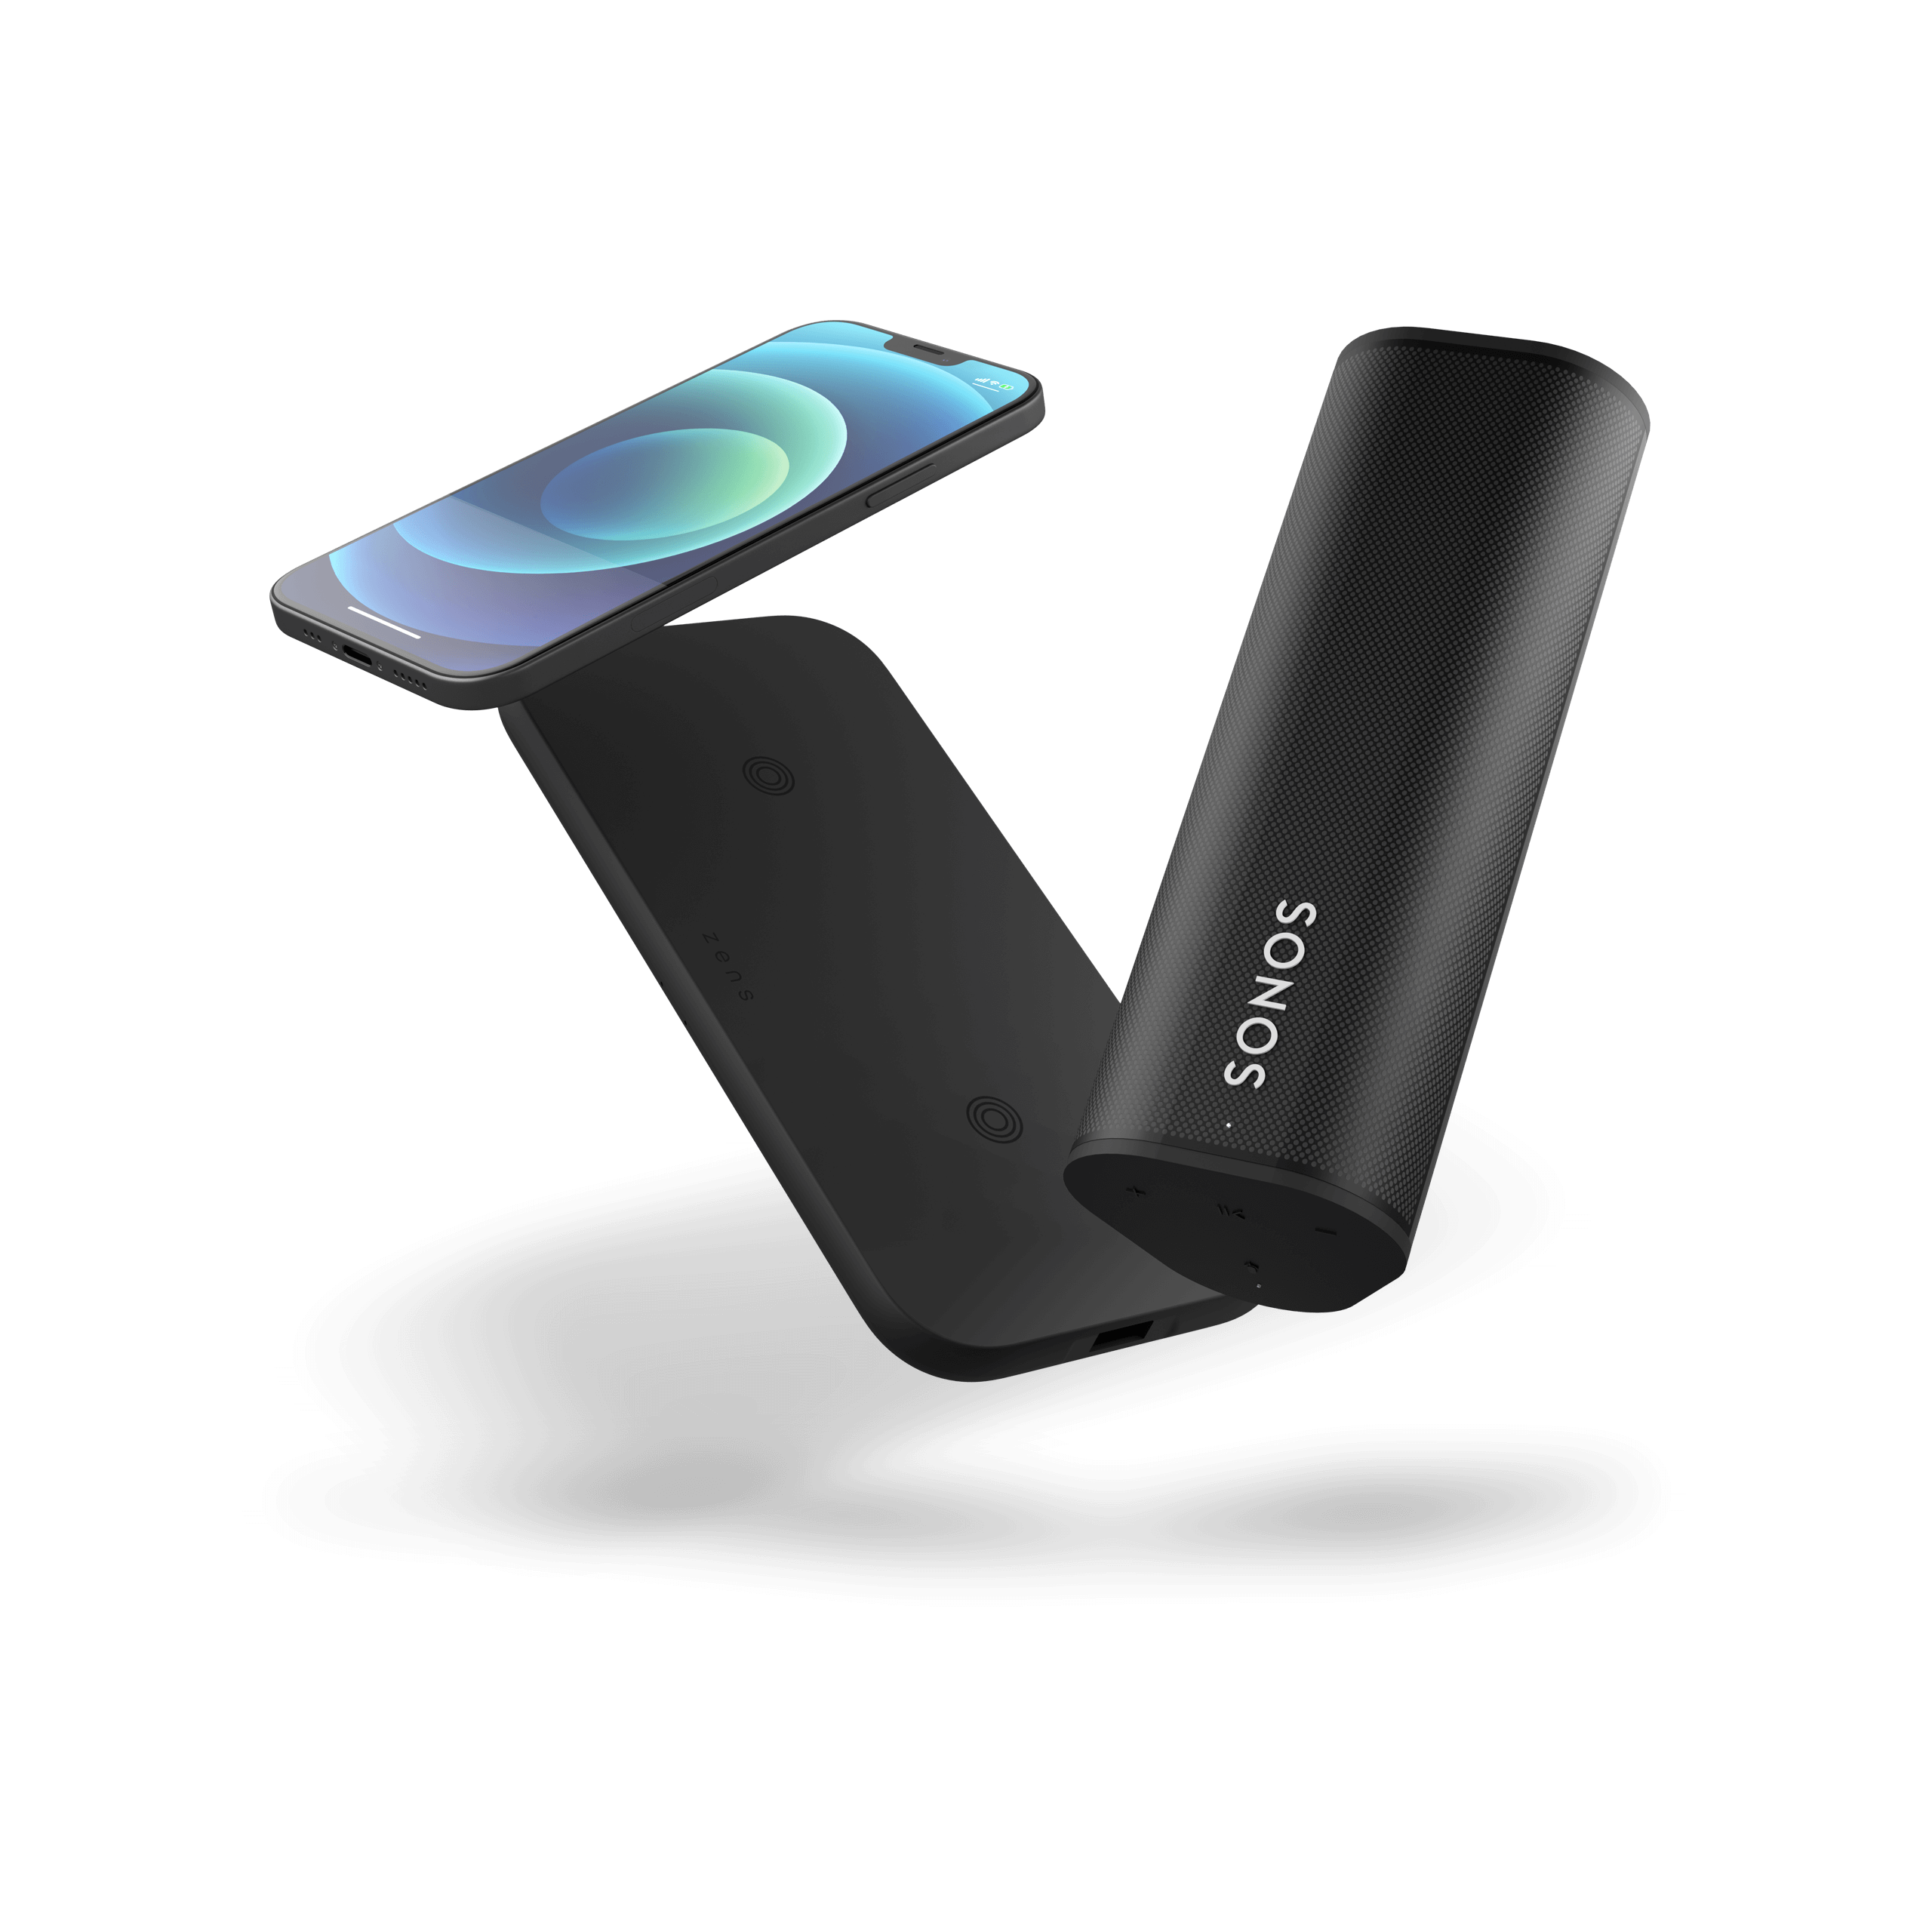 Zwevende draadloze oplader met iPhone en Sonos Roam speaker